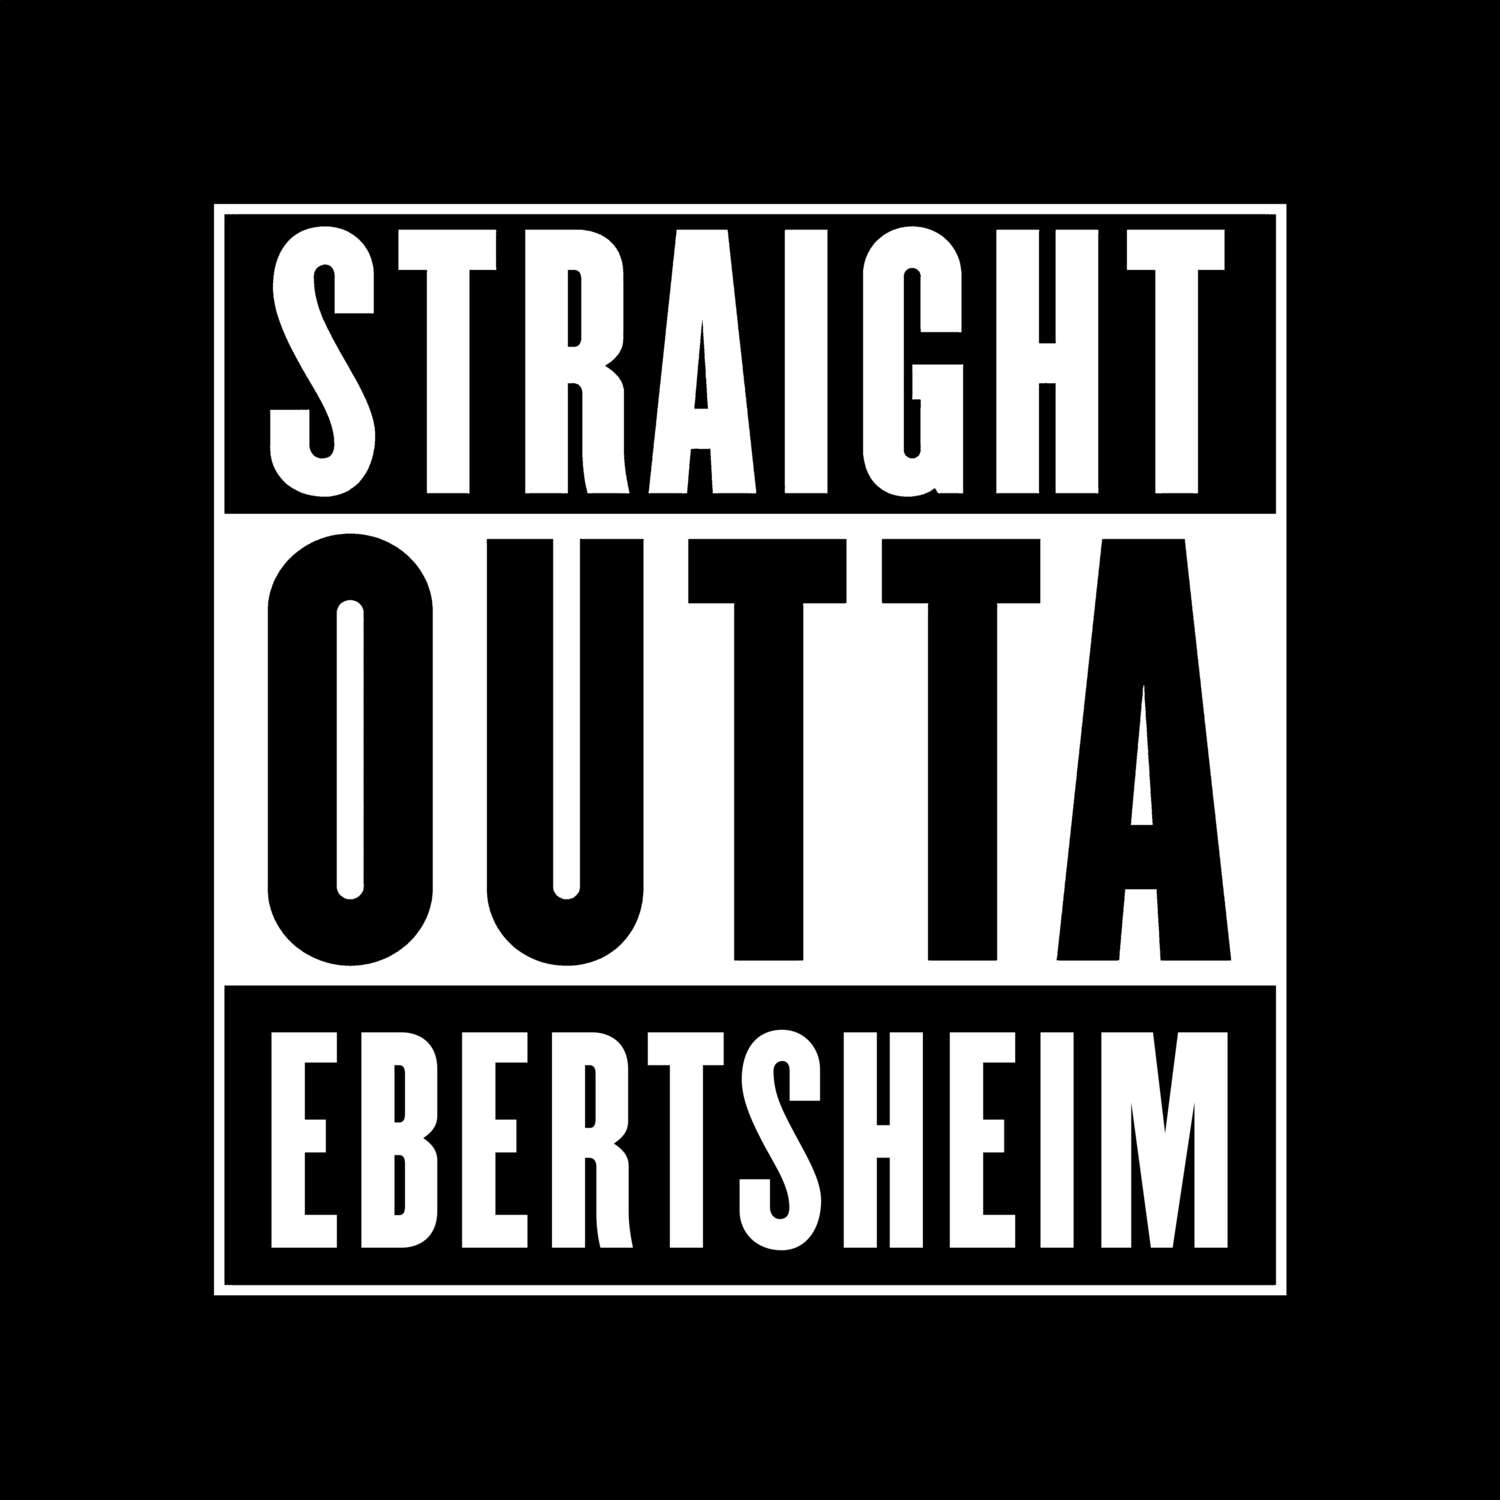 Ebertsheim T-Shirt »Straight Outta«